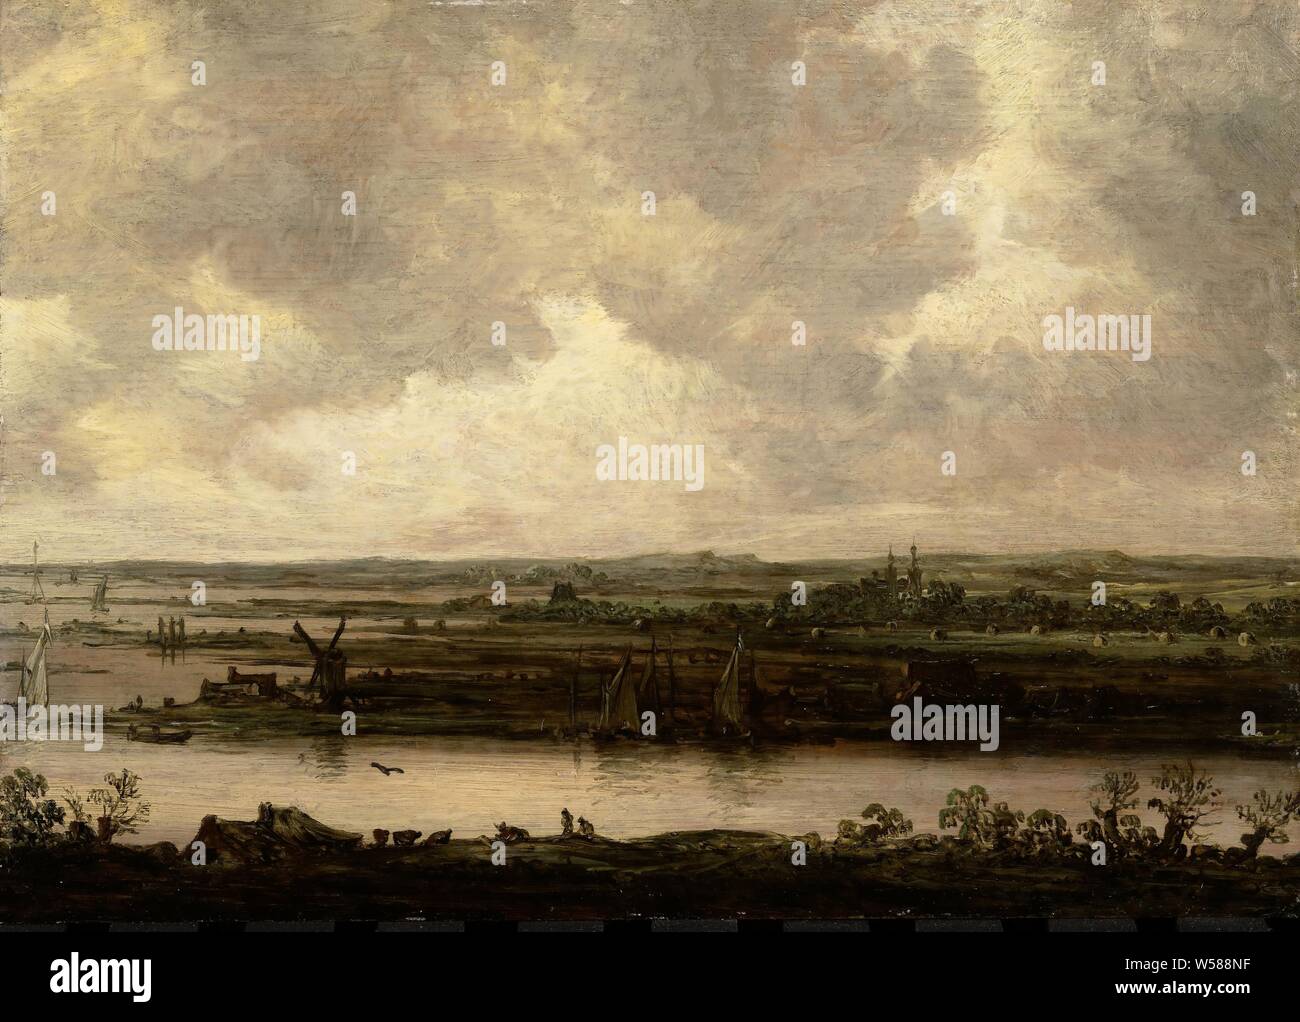 Vue panoramique de la rivière Spaarne et l'Haarlemmermeer, vue sur une large rivière. Paysage, vu d'un sommet de la rivière. Sur la gauche des navires à voile et un moulin à vent. Au loin un château entre les arbres. Peut-être que le tableau fait partie d'une œuvre plus grande, rivière, Spaarne, Haarlemmermeer, Jan van Goyen, en 1644 ou après, de bord, de la peinture à l'huile (peinture), support : h 21,3 cm × w 30 cm cadre H 29 cm × 37,7 cm w : sightsize 20,9 cm × w h 29,6 cm Banque D'Images